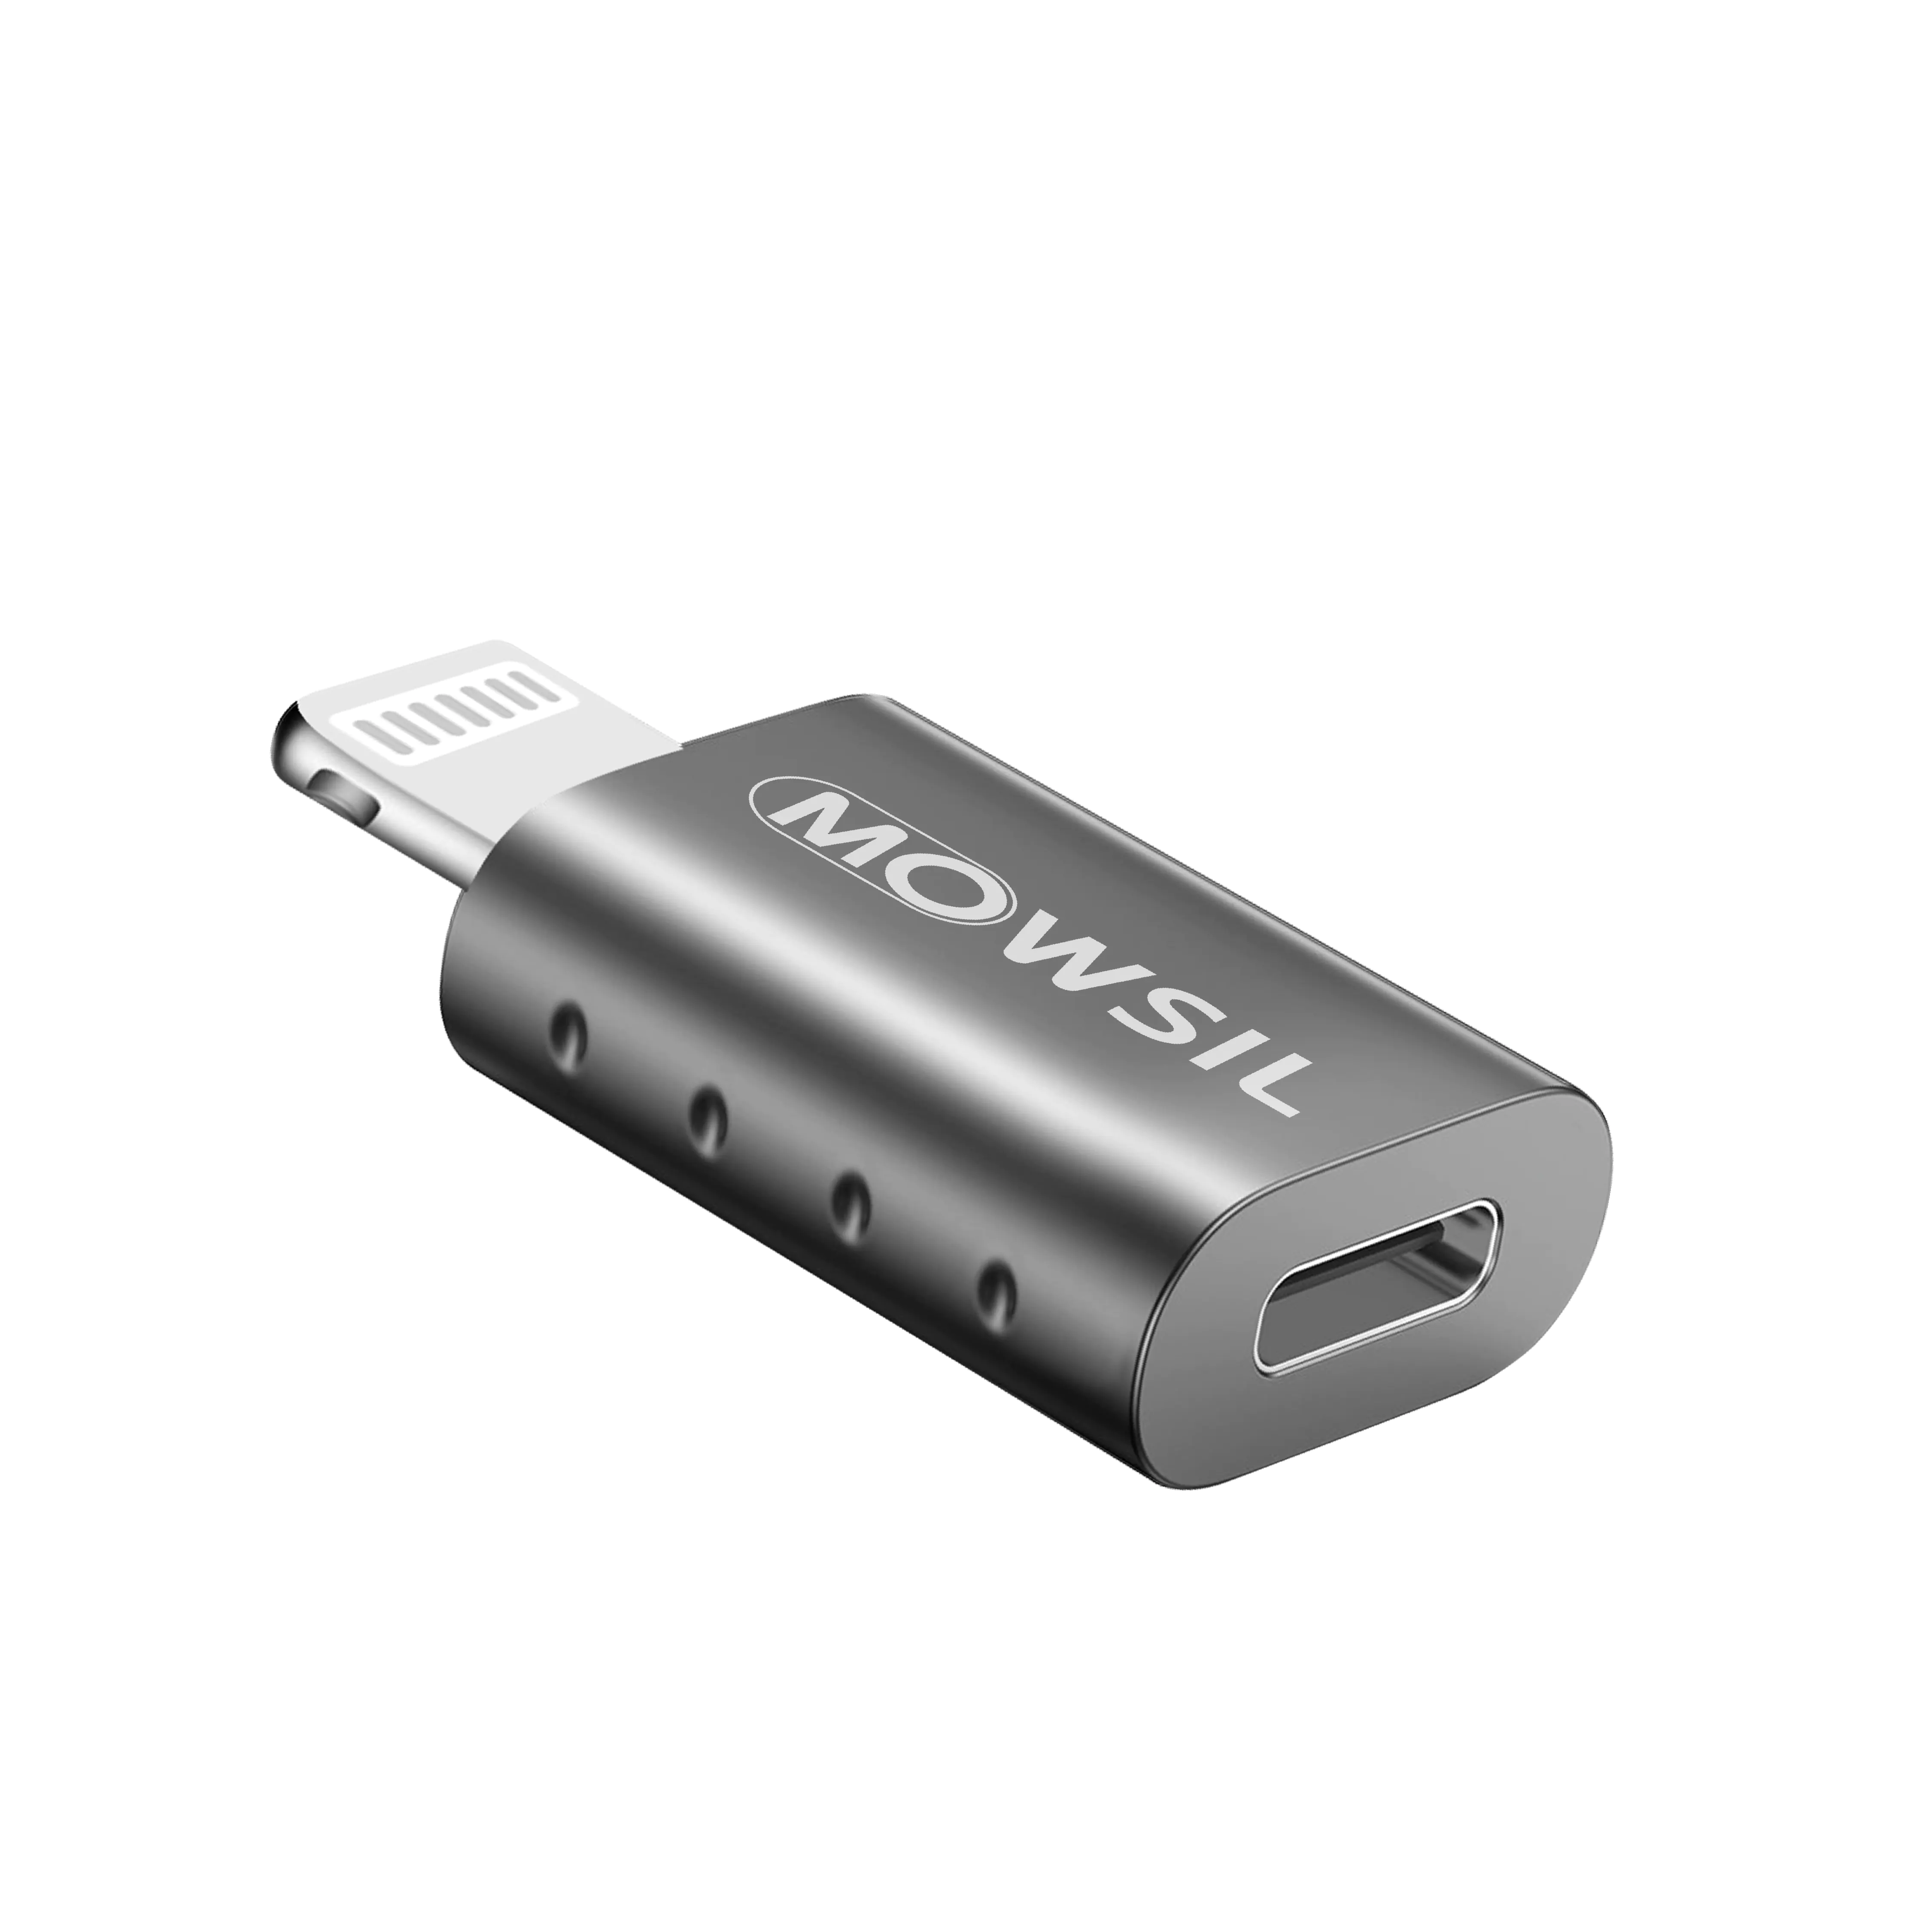 Mowsil Lightning Male to USB C Female Adapter for iPhone OTG